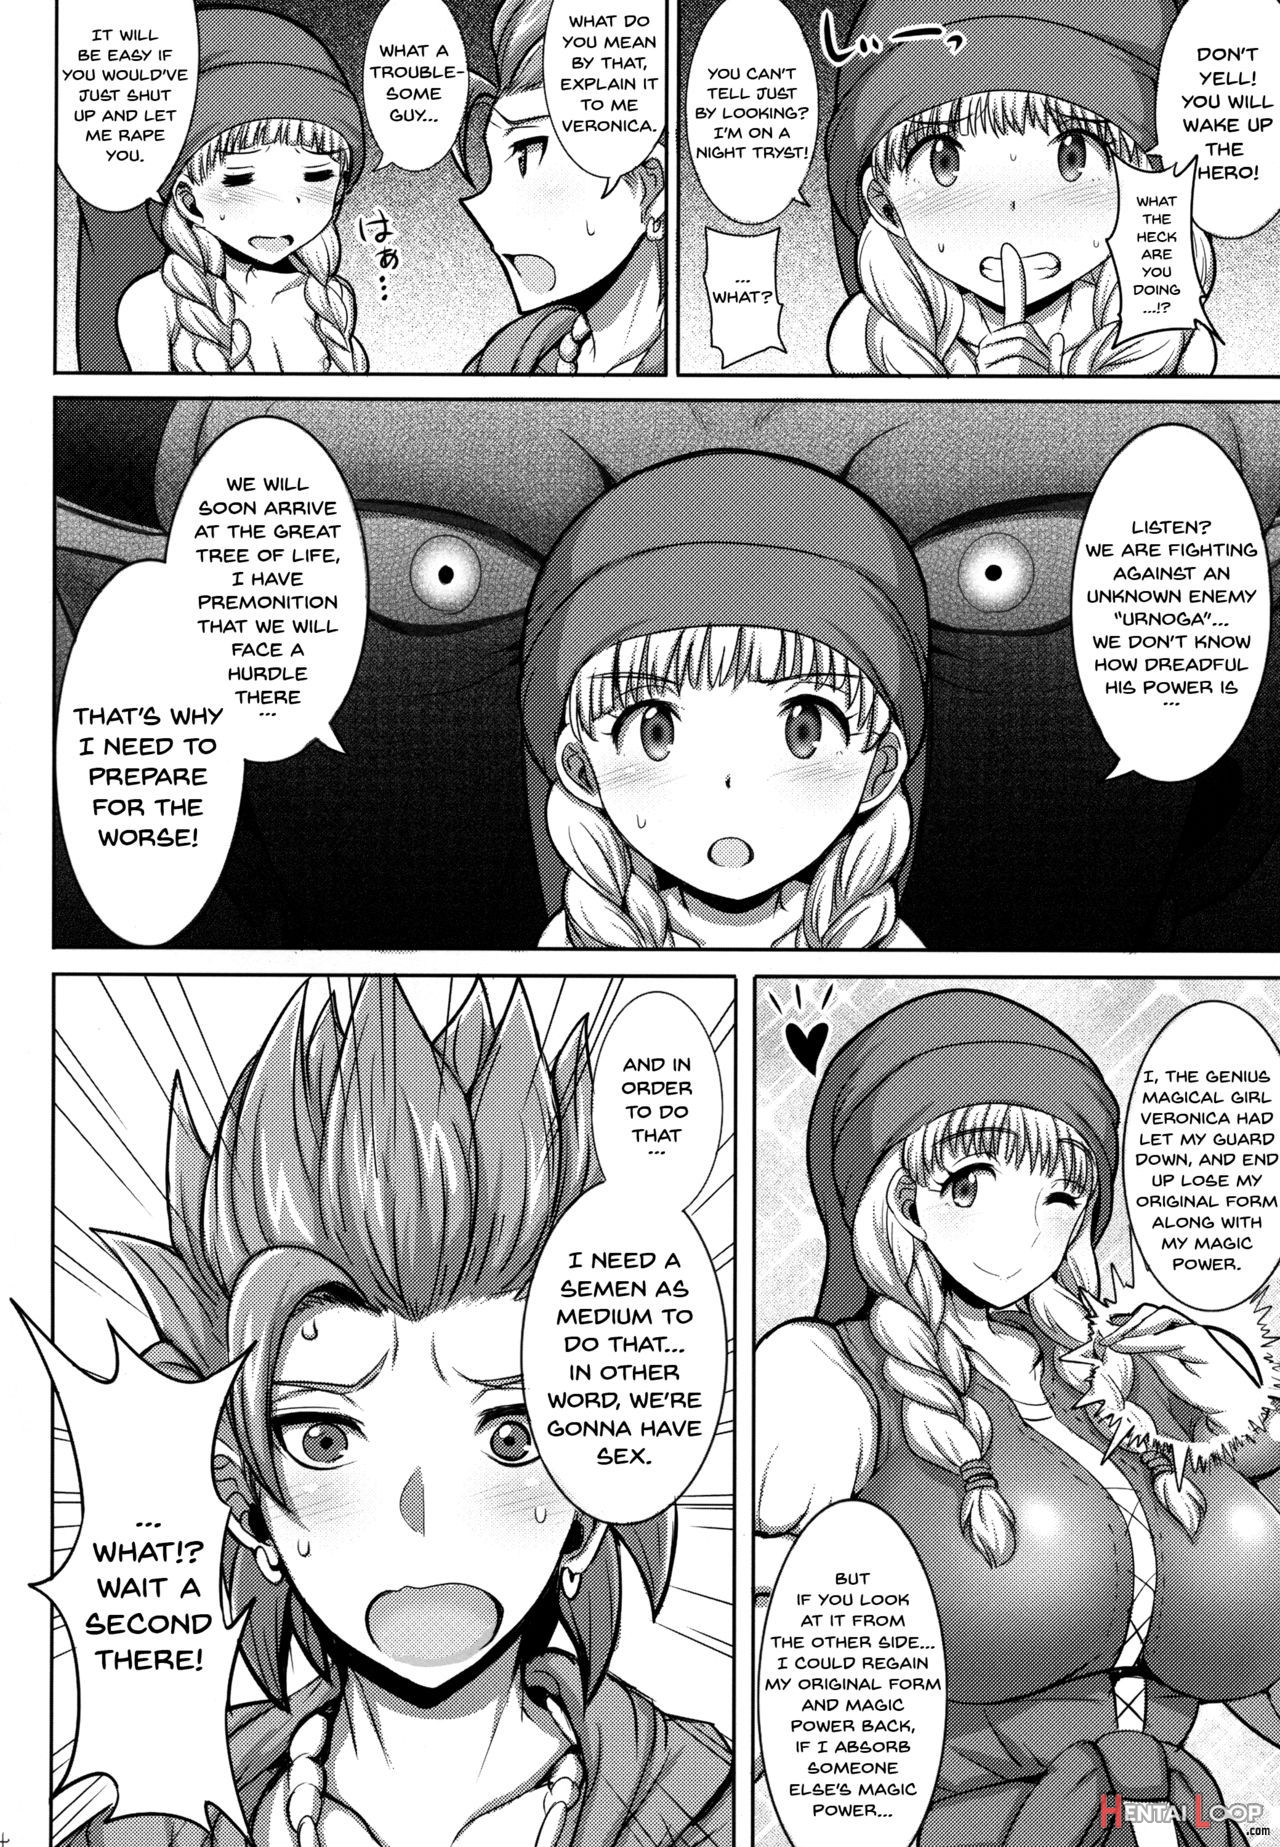 Veronica-sama Return page 3